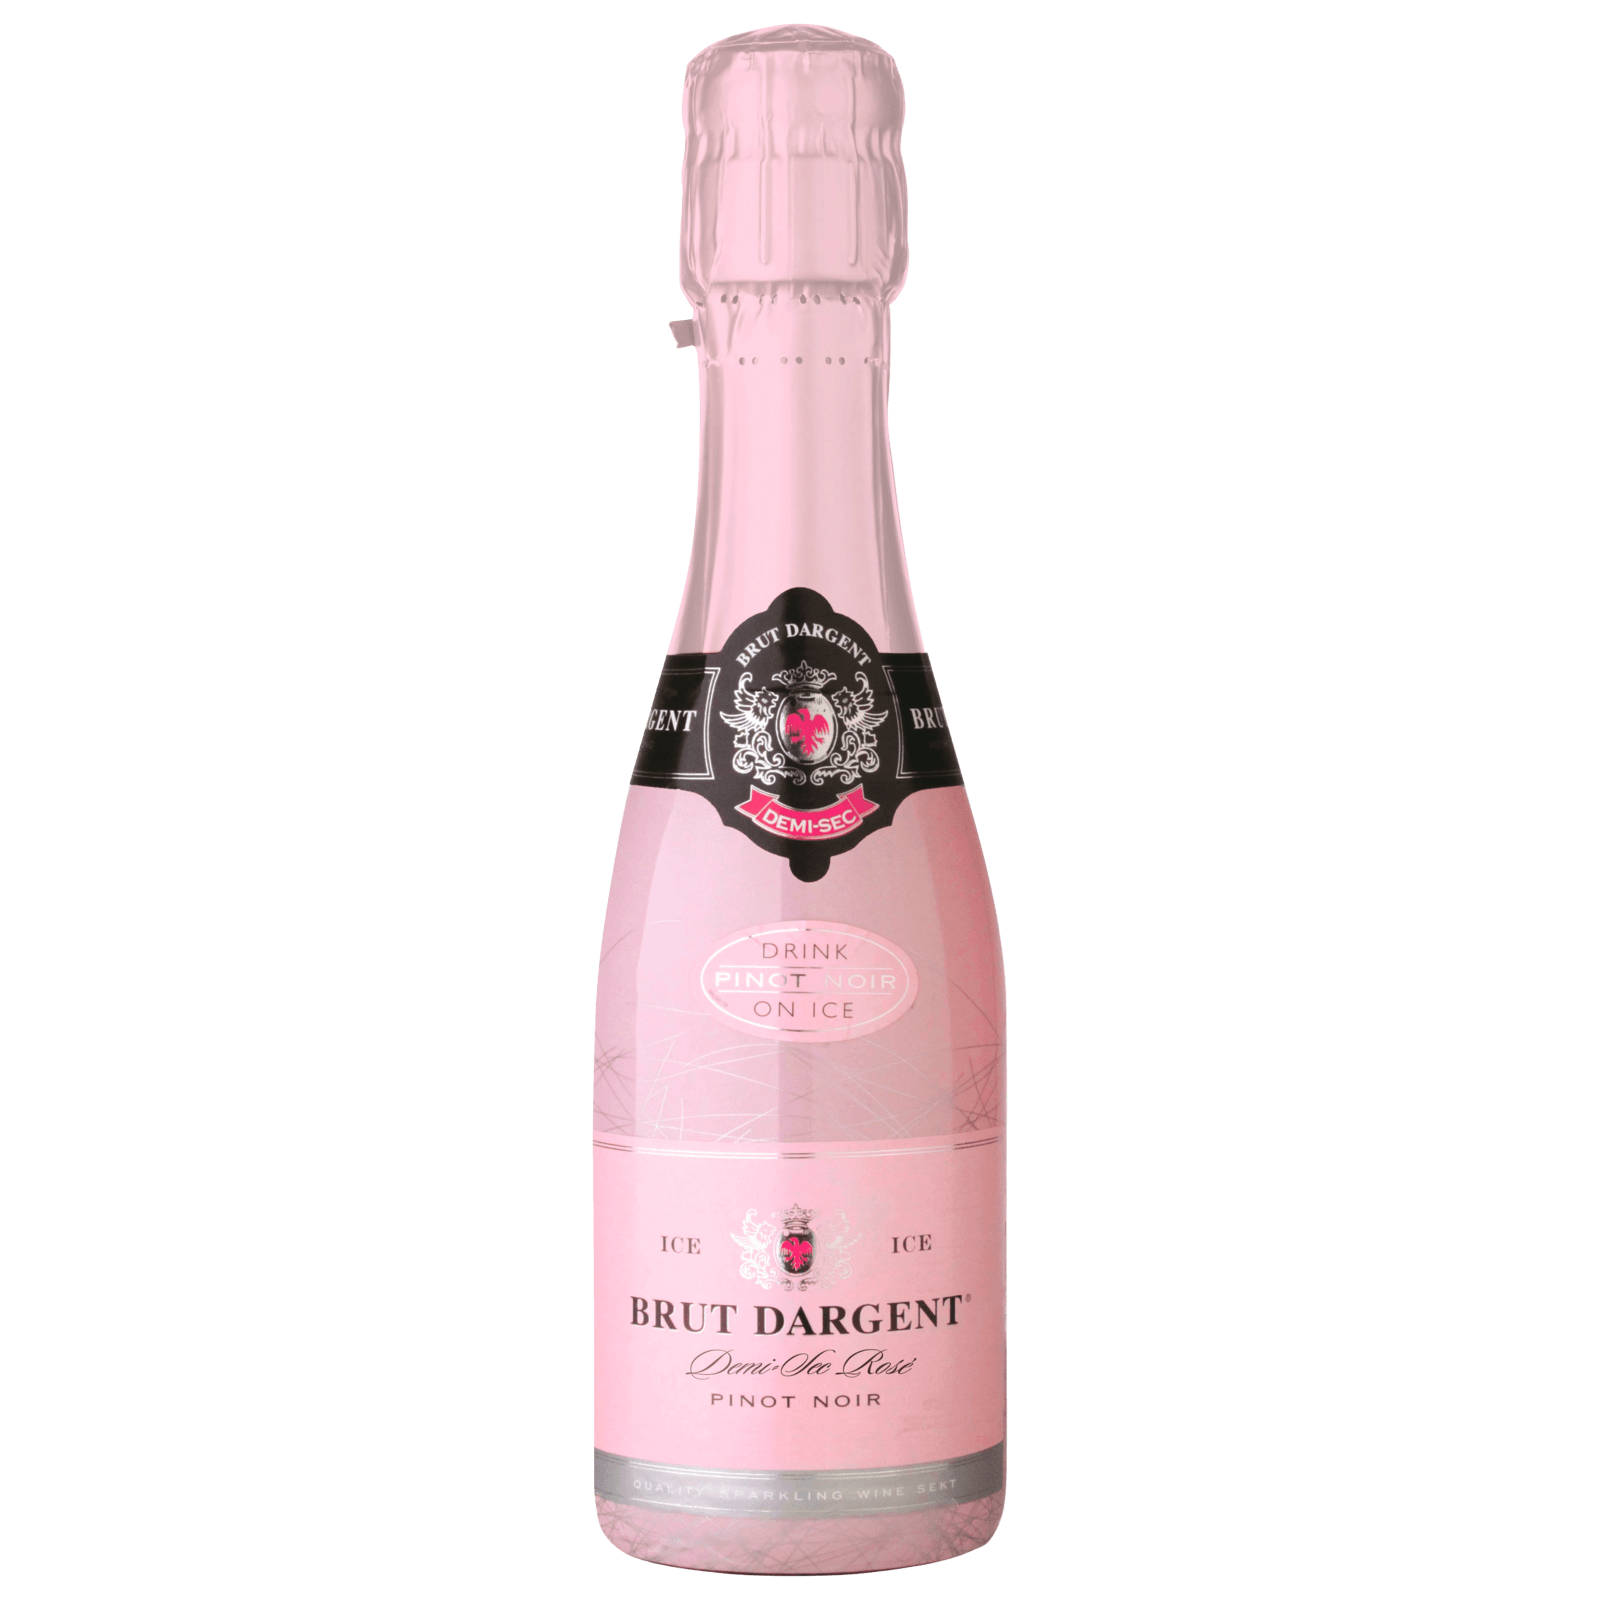 Brut Dargent Pinot Noir Sekt Rosé 0,2l bei REWE online bestellen!